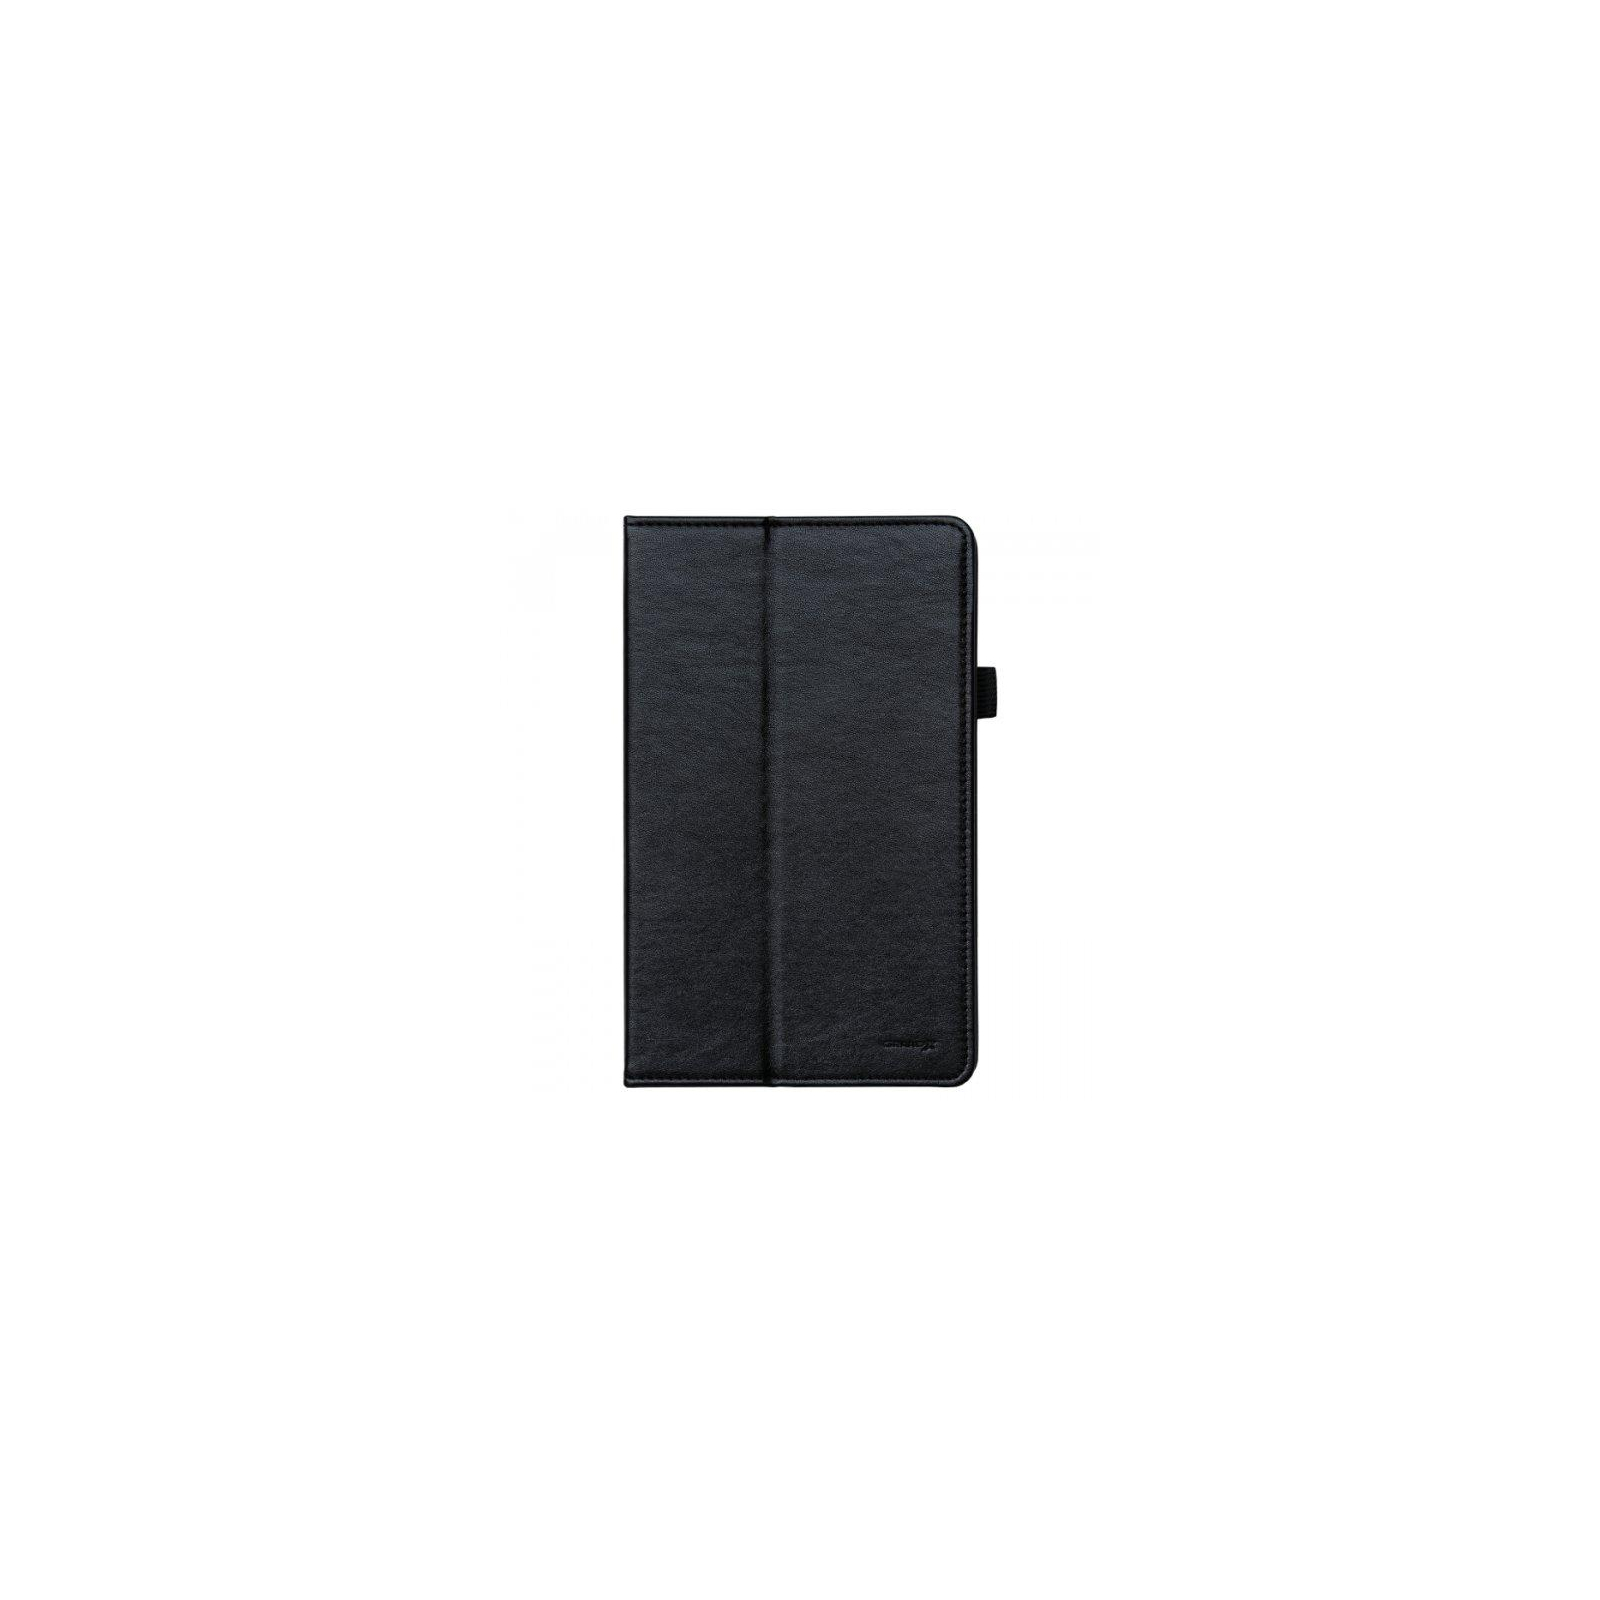 Чохол до планшета Grand-X для Lenovo TAB4 8 Plus TB-8704 Black (LTC-LT48PB)